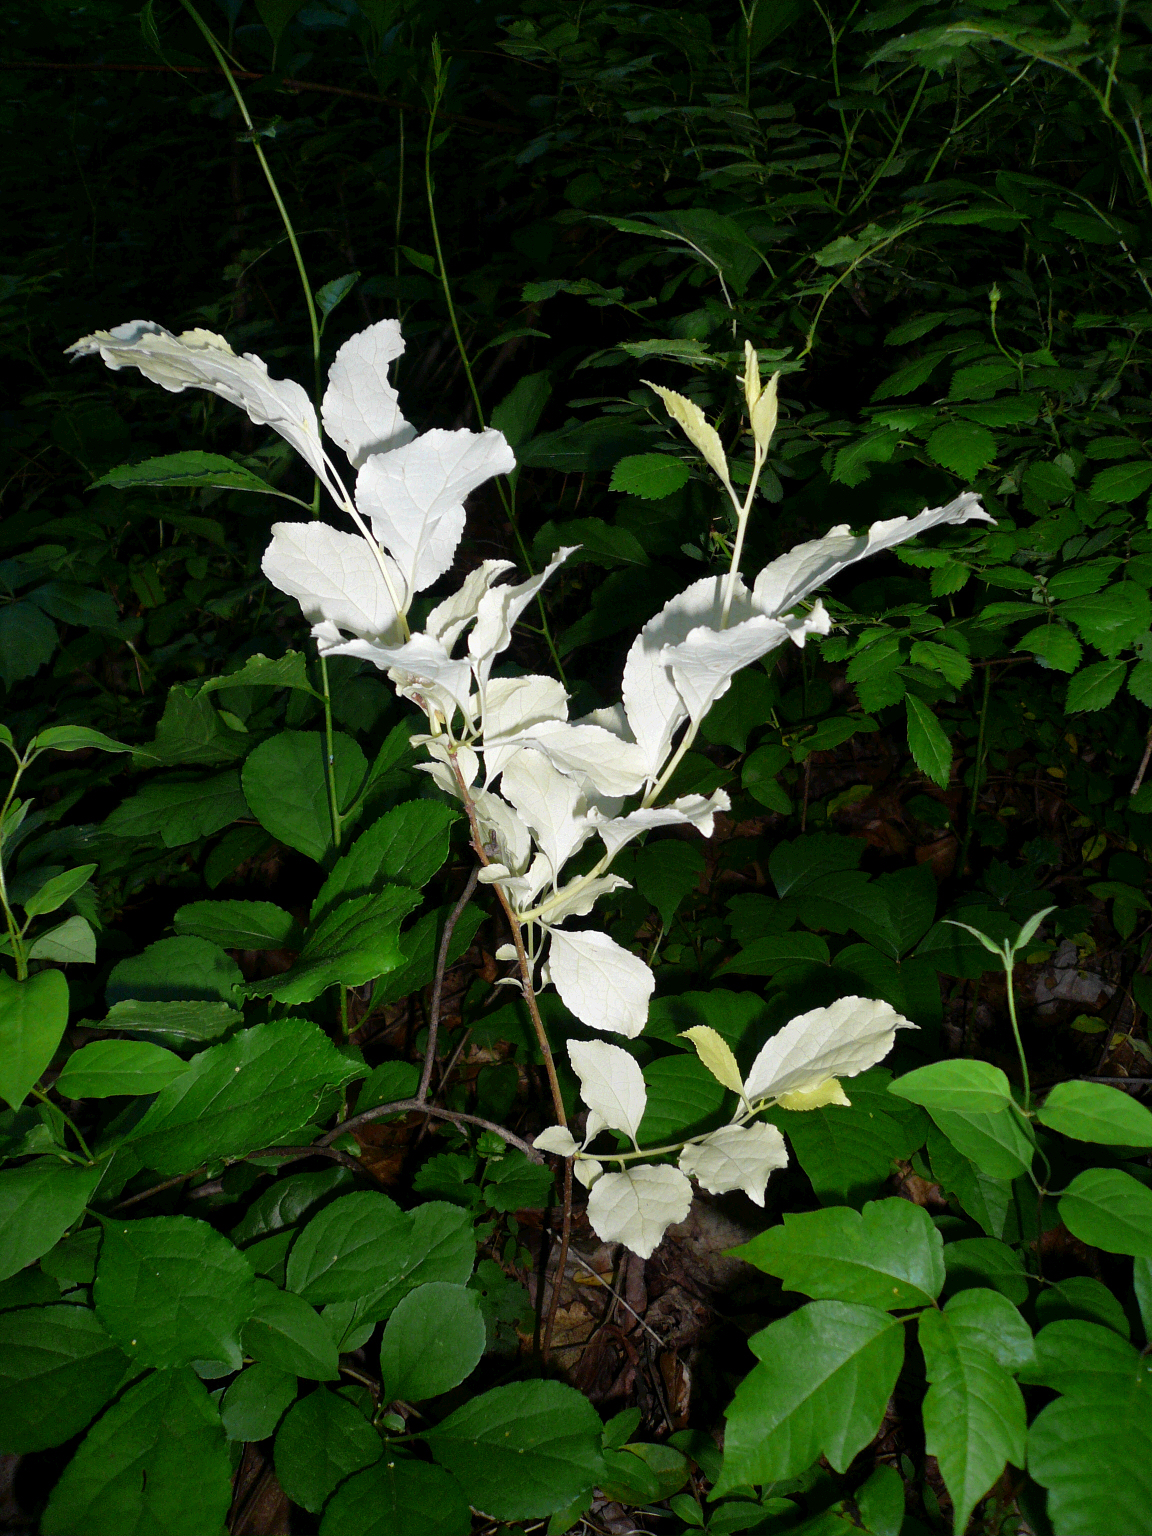 Albino Plant or ...?